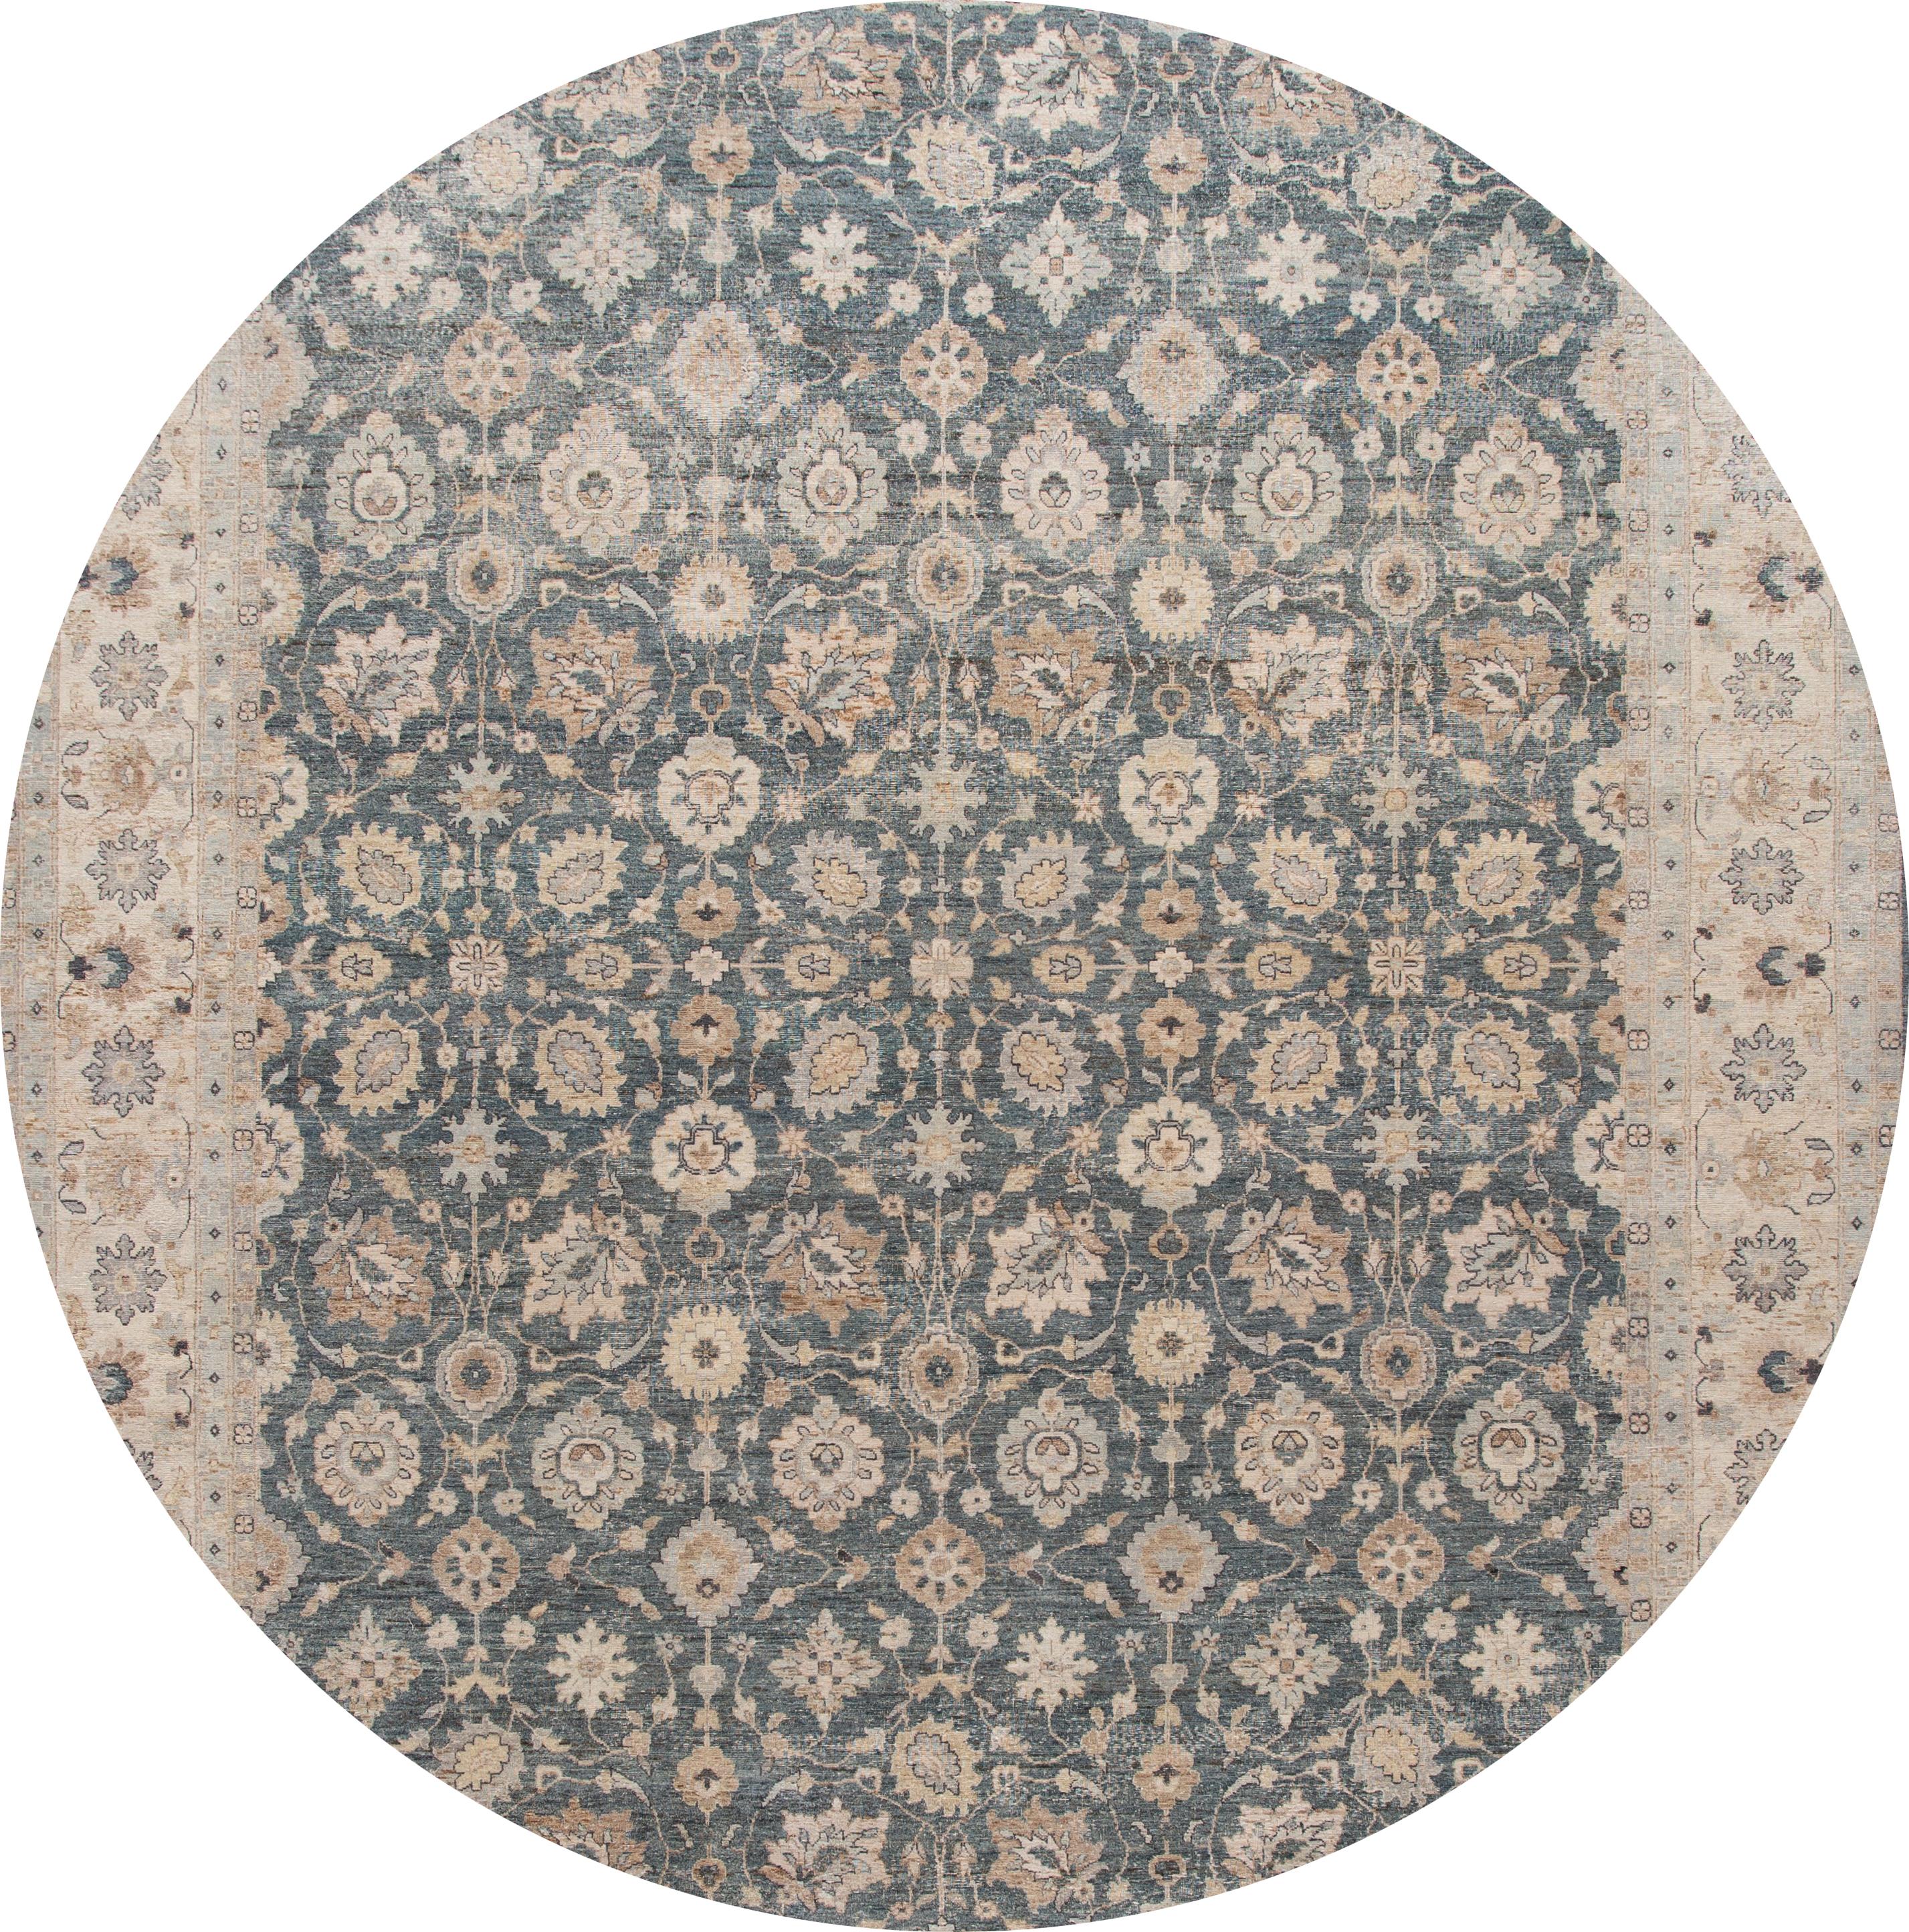 Schöner handgeknüpfter moderner indischer Wollteppich. Dieser Teppich hat ein blaues Feld mit einer hellbraunen Umrandung und floralen Mustern überall. 

Dieser Teppich misst 11' 10